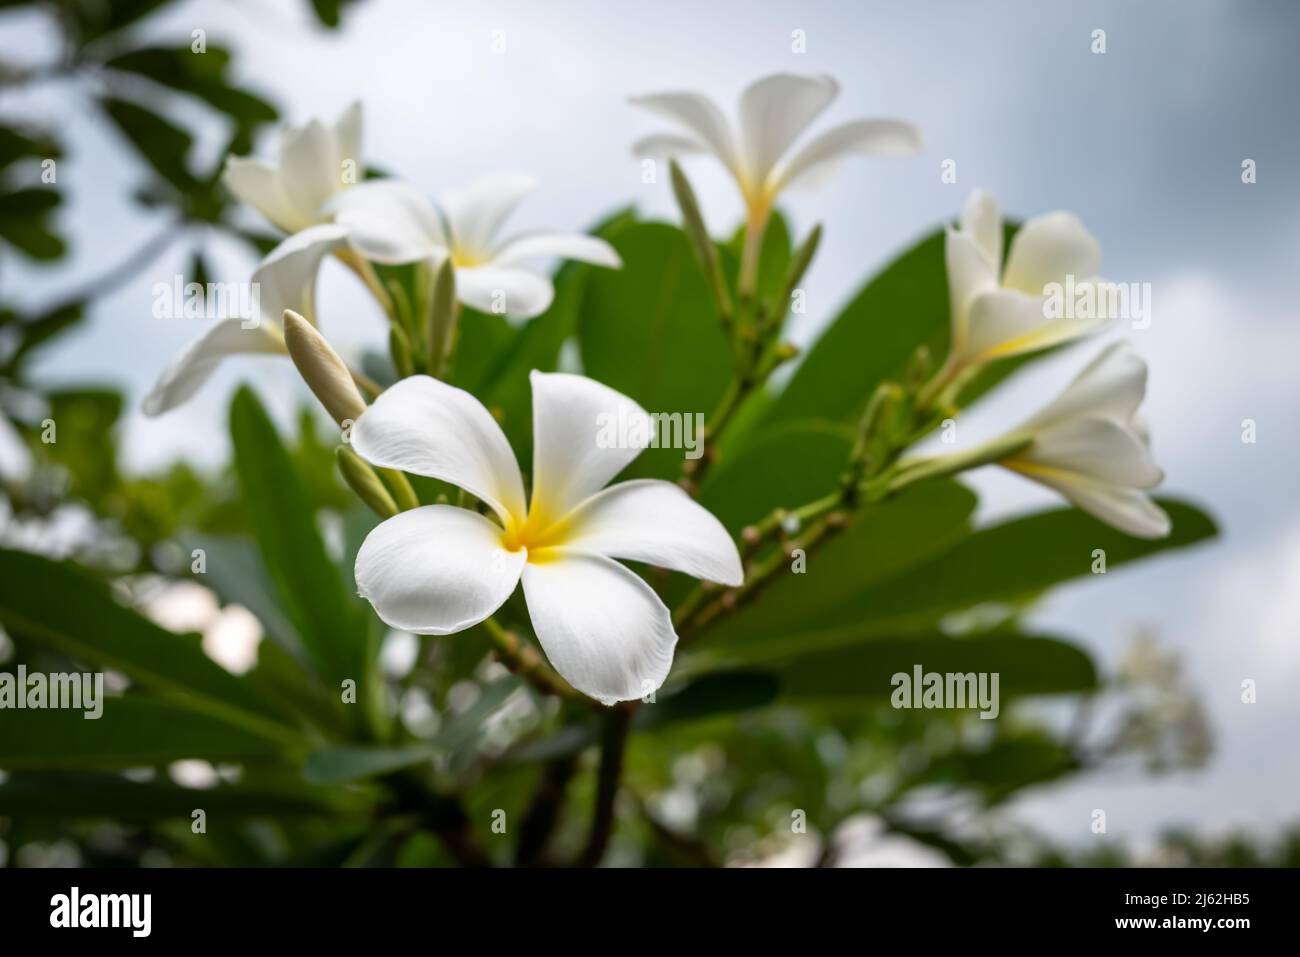 Plumeria è endemico alberi del Messico e Thailandia e fiore nazionale del Laos. Albero del Tempio bianco con sfondo verde foglia nel giardino. Foto Stock